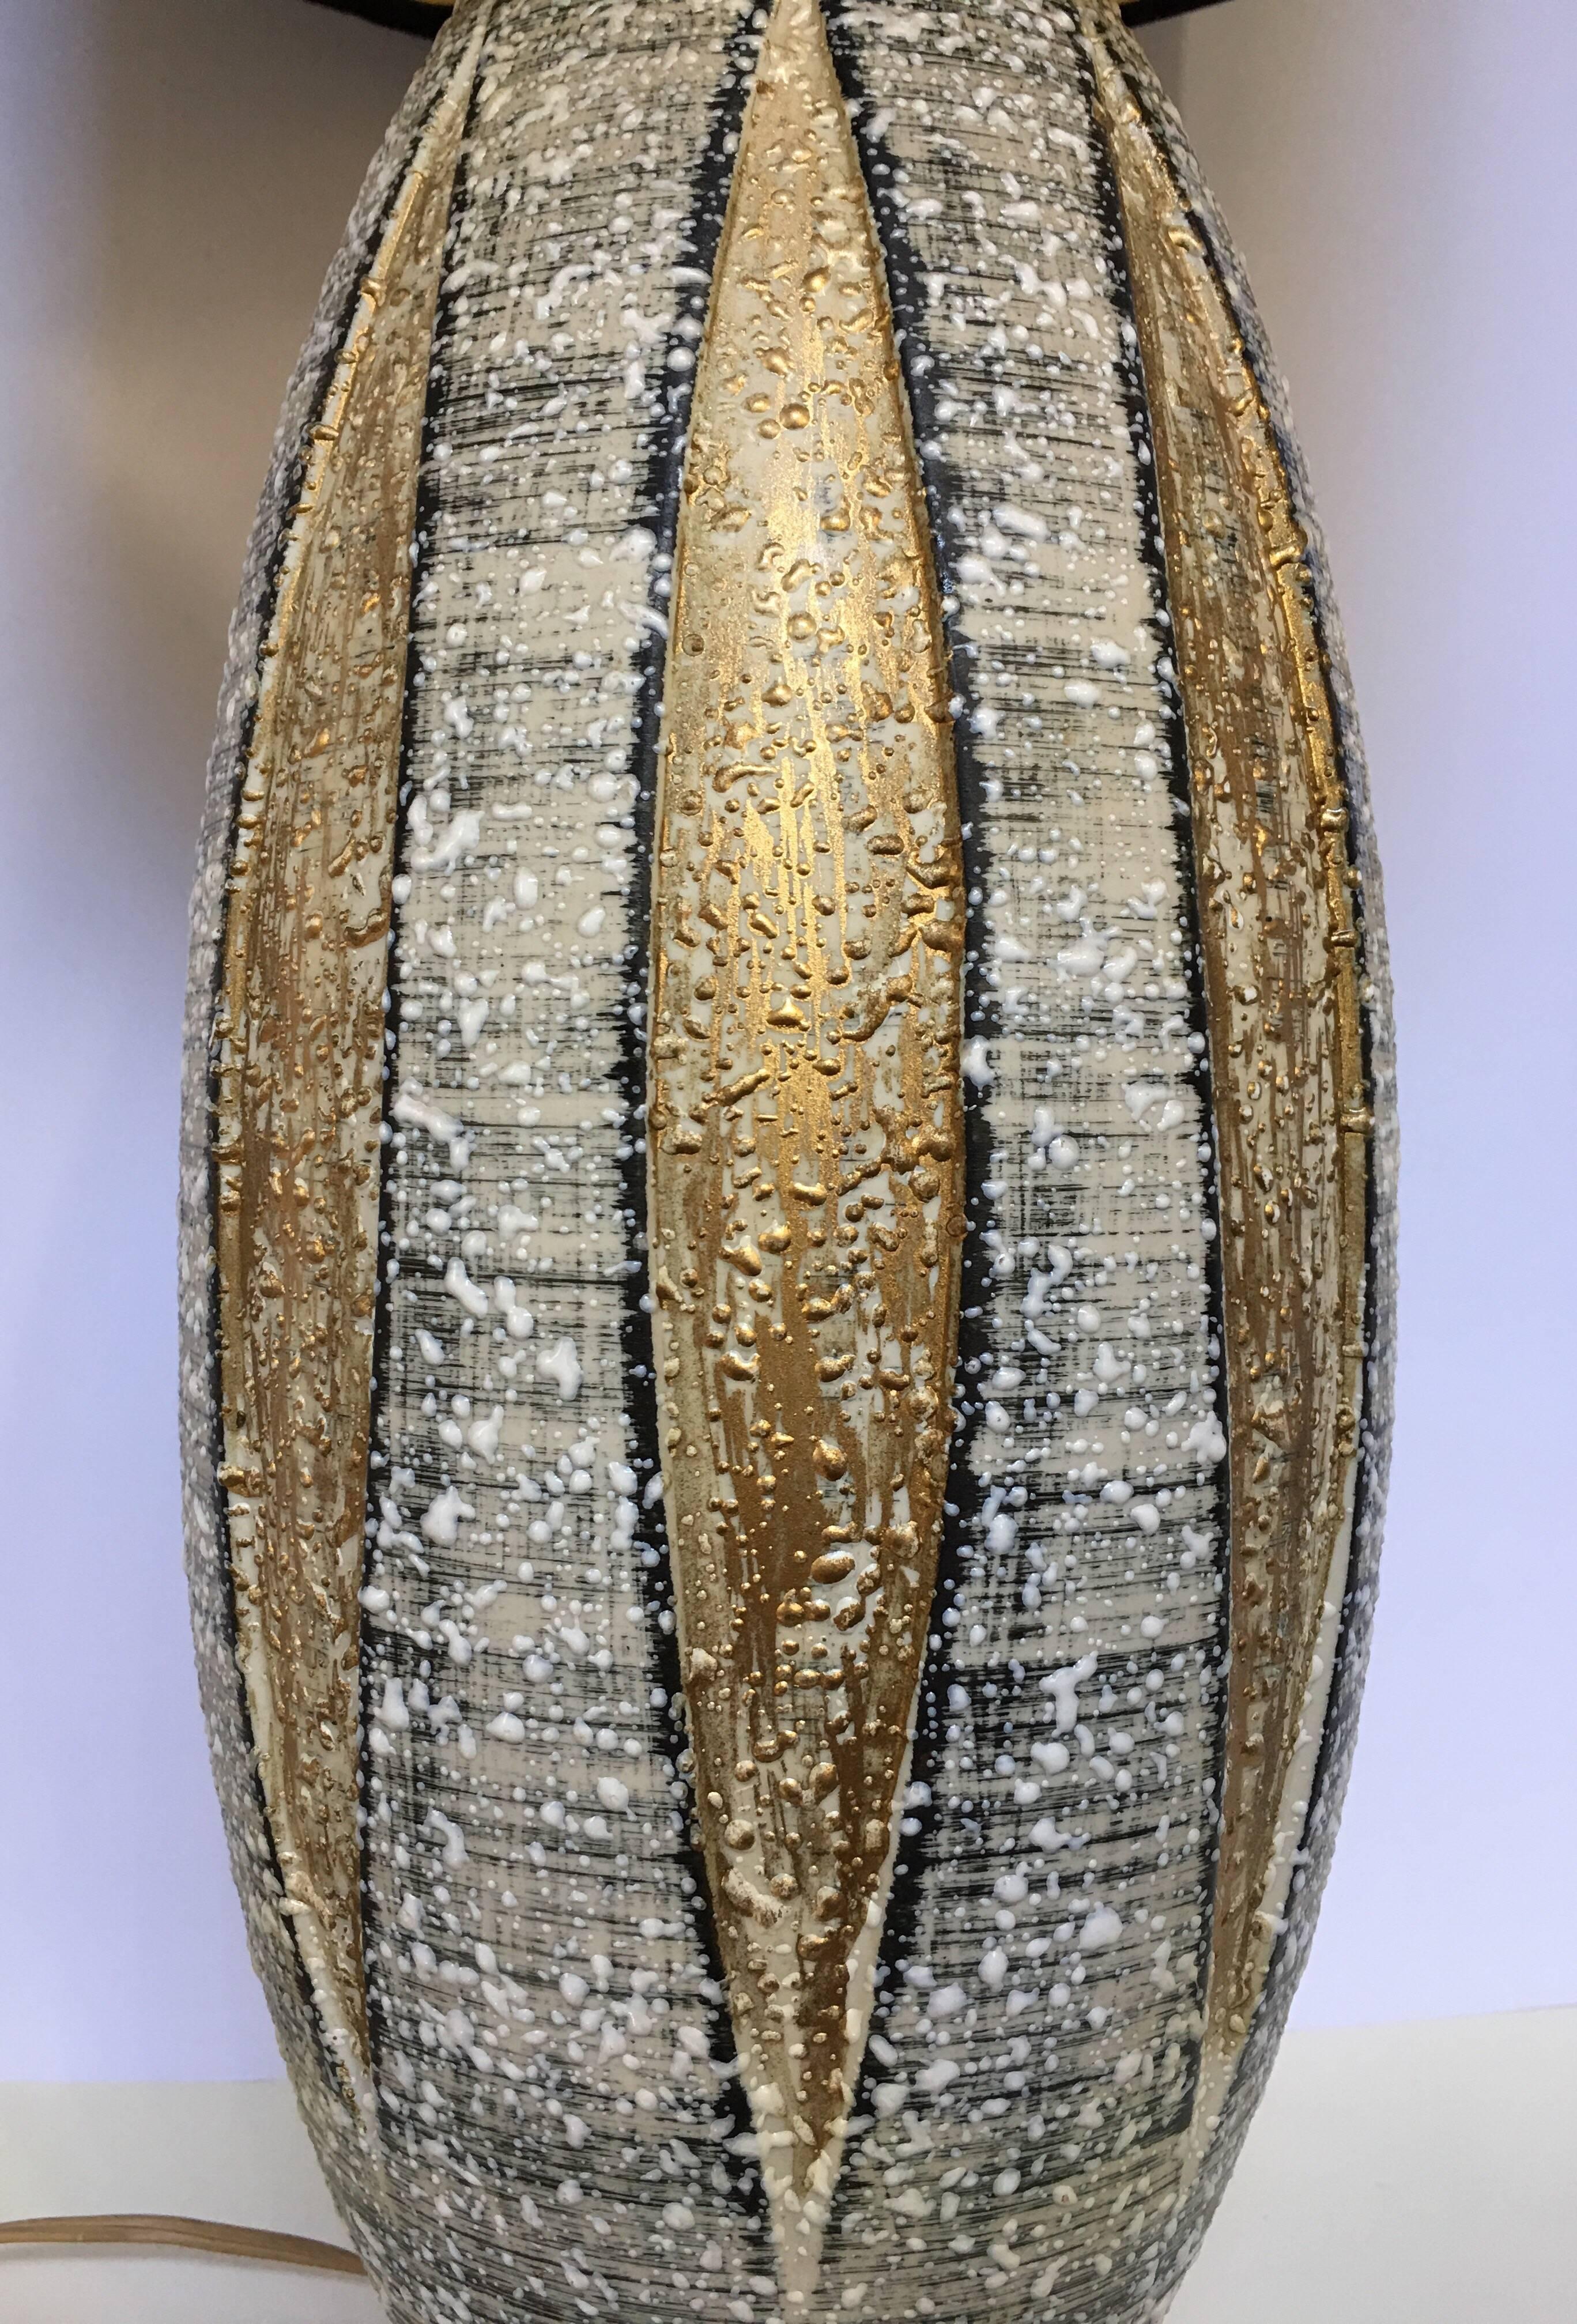 Mid-Century Modern Keramik Lava glasiert Tischlampe. Diese atomar inspirierte Lampe zeichnet sich durch ein dimensionales Blatt- oder Dart-Design mit goldfarbenen Metallic-Akzenten aus. In Anlehnung an Bitossi, Raymor und Guido Gambone.
Lampenschirm